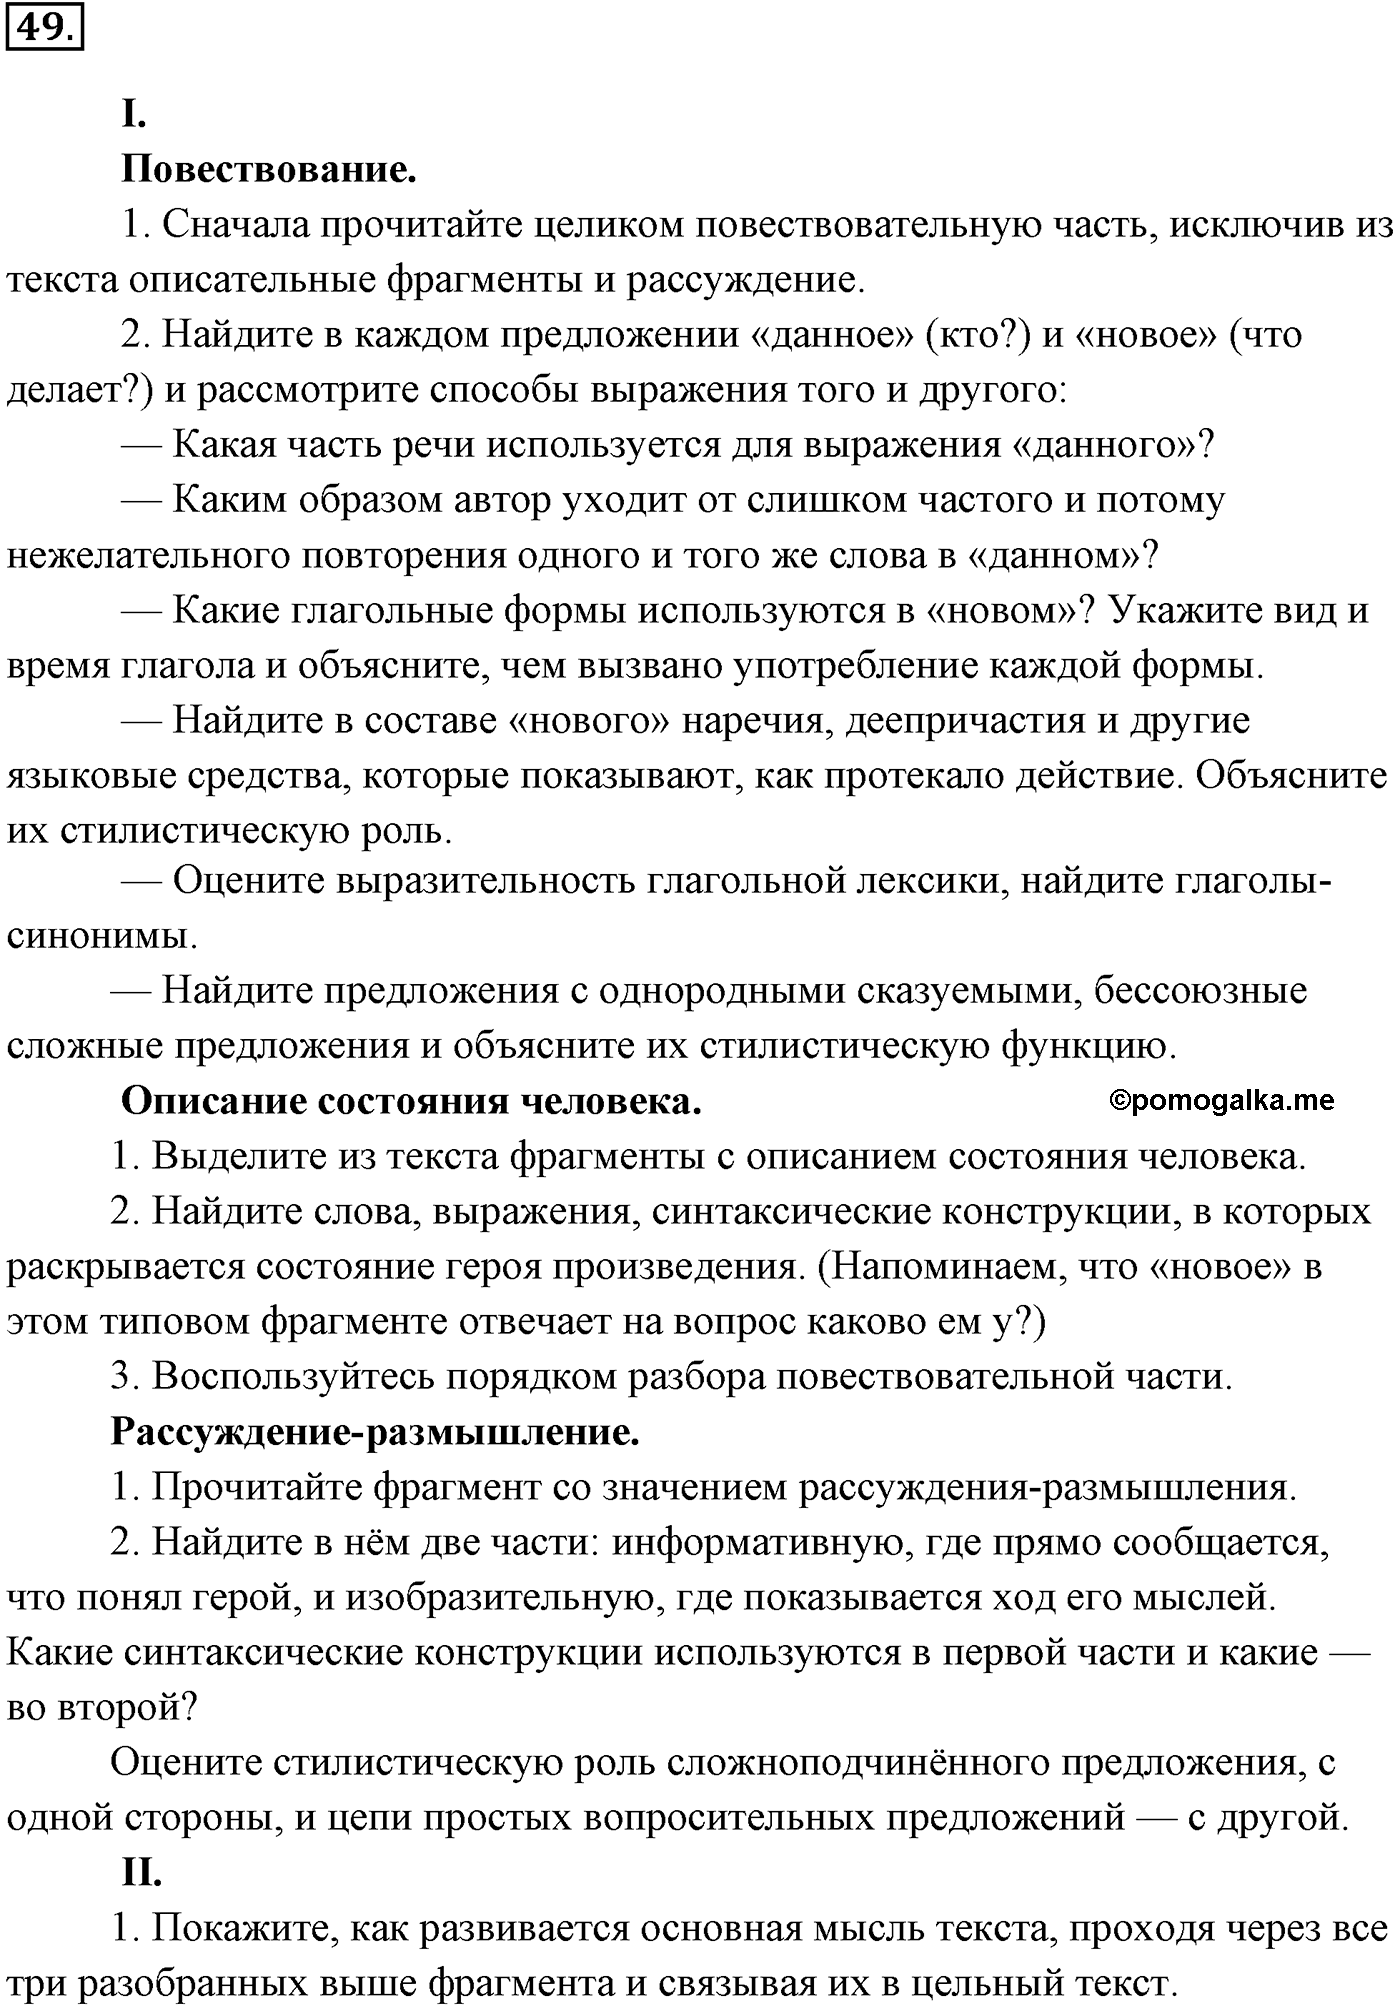 страница 31 номер 49 русский язык 9 класс Разумовская 2011 год